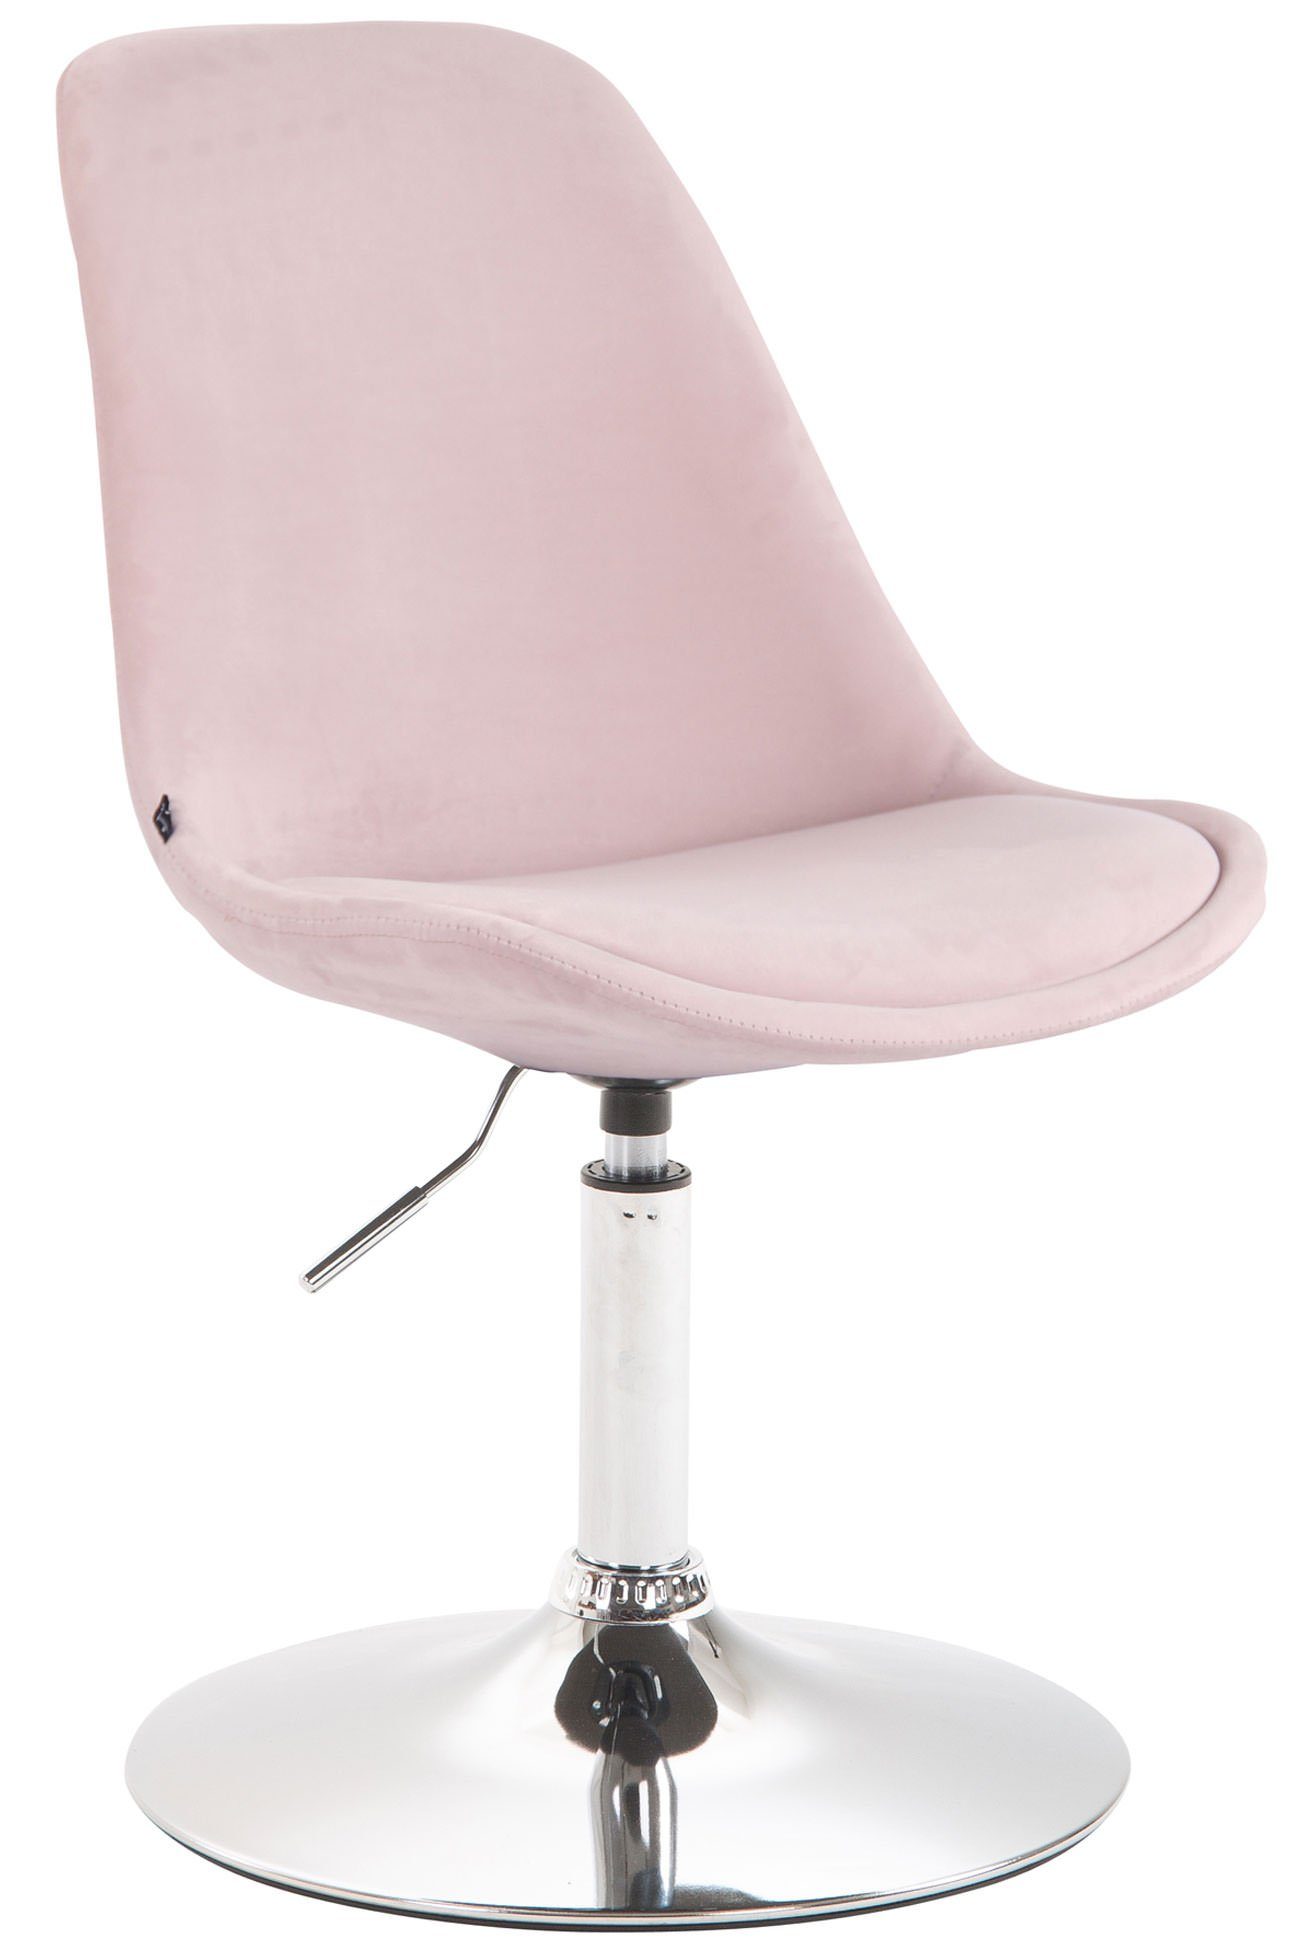 TPFLiving Esszimmerstuhl Mavic mit hochwertig gepolsterter Sitzfläche - Konferenzstuhl (Küchenstuhl - Esstischstuhl - Wohnzimmerstuhl - Polsterstuhl), Gestell: Metall chrom - Sitzfläche: Samt pink